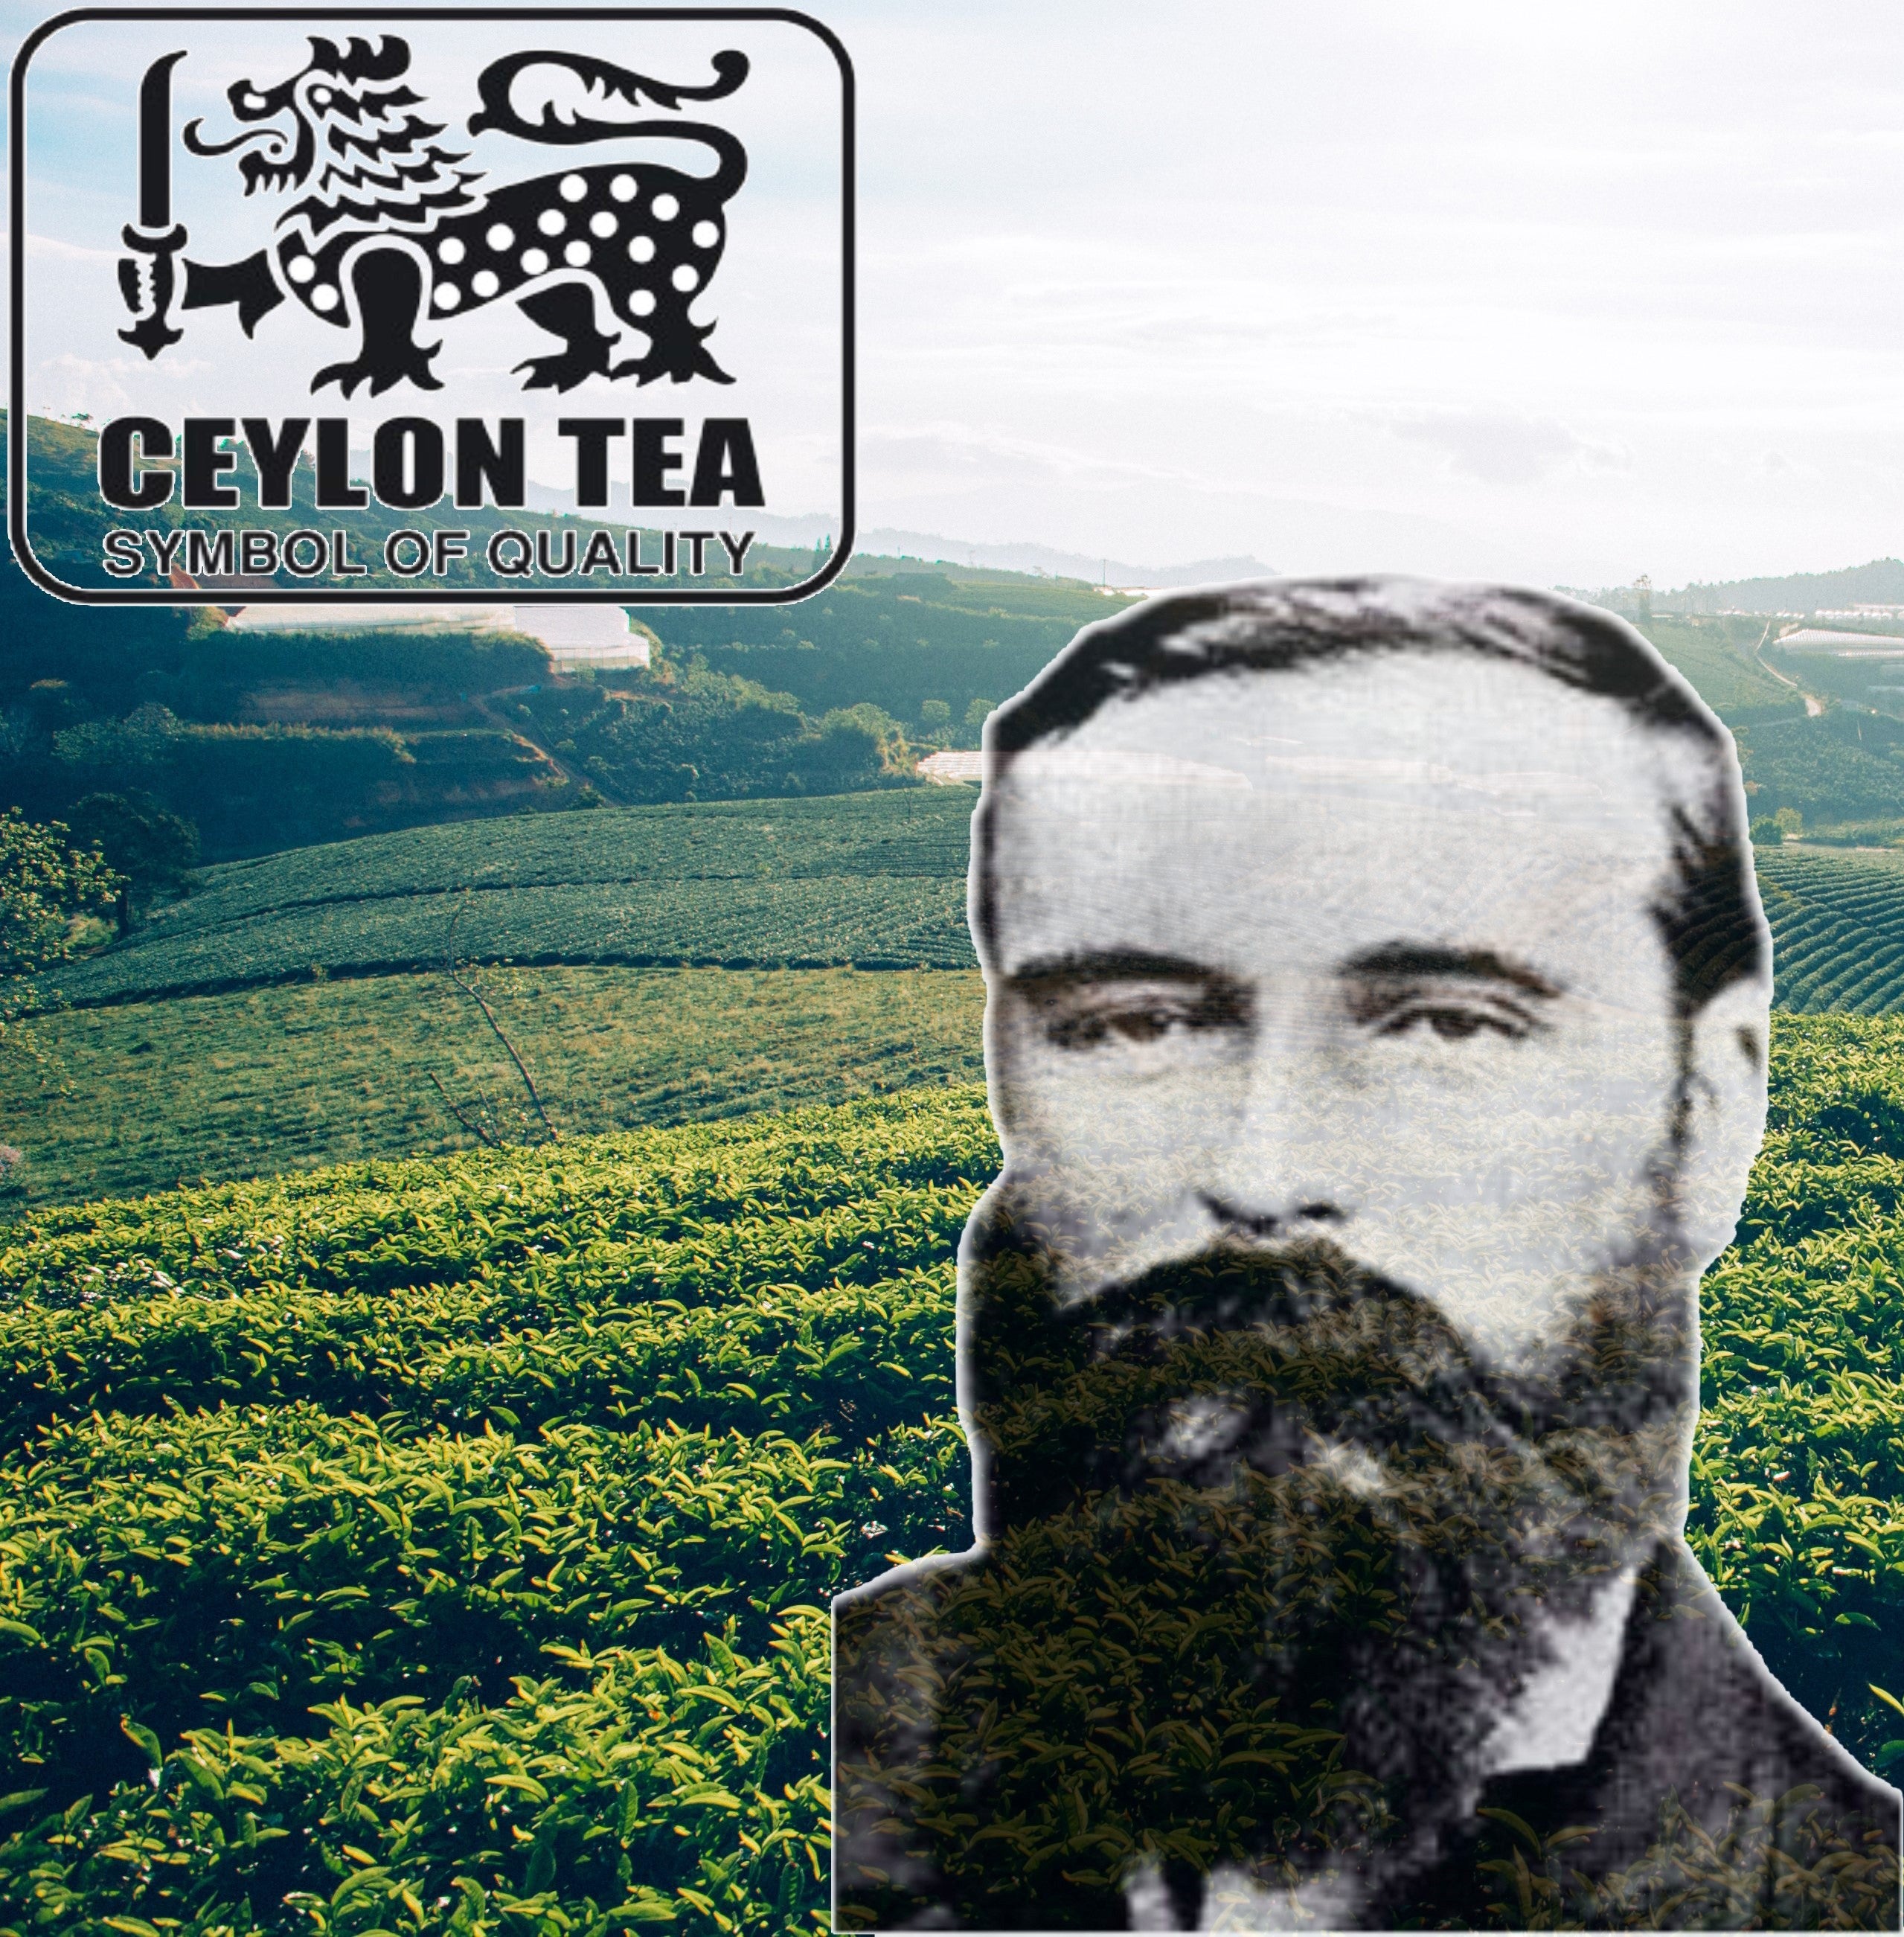 The Father of Sri Lankan Tea